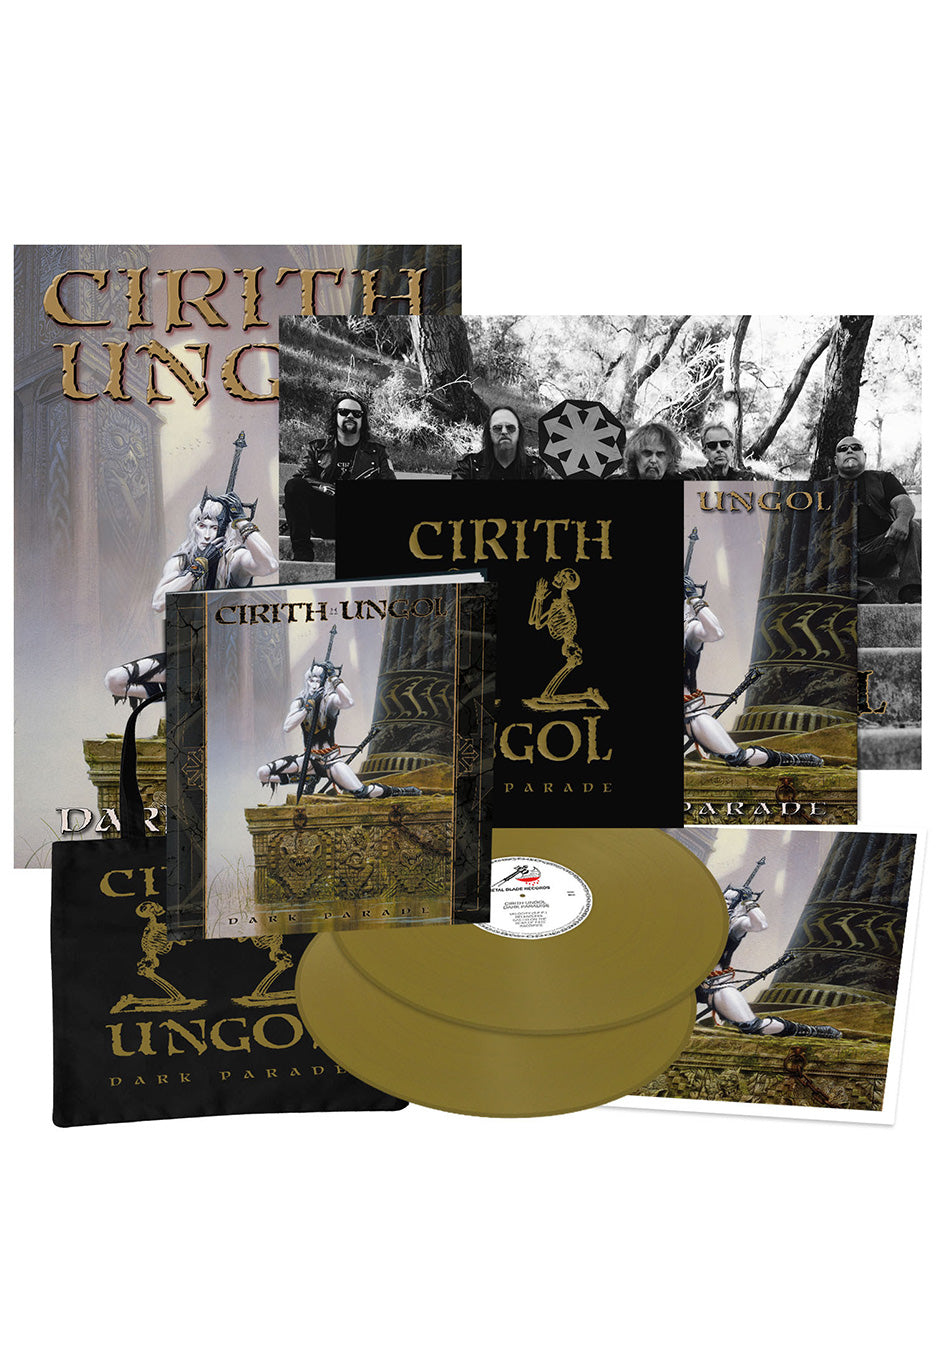 Cirith Ungol - Dark Parade (Ltd. Special Edition) Gold - Colored 2 Vinyl